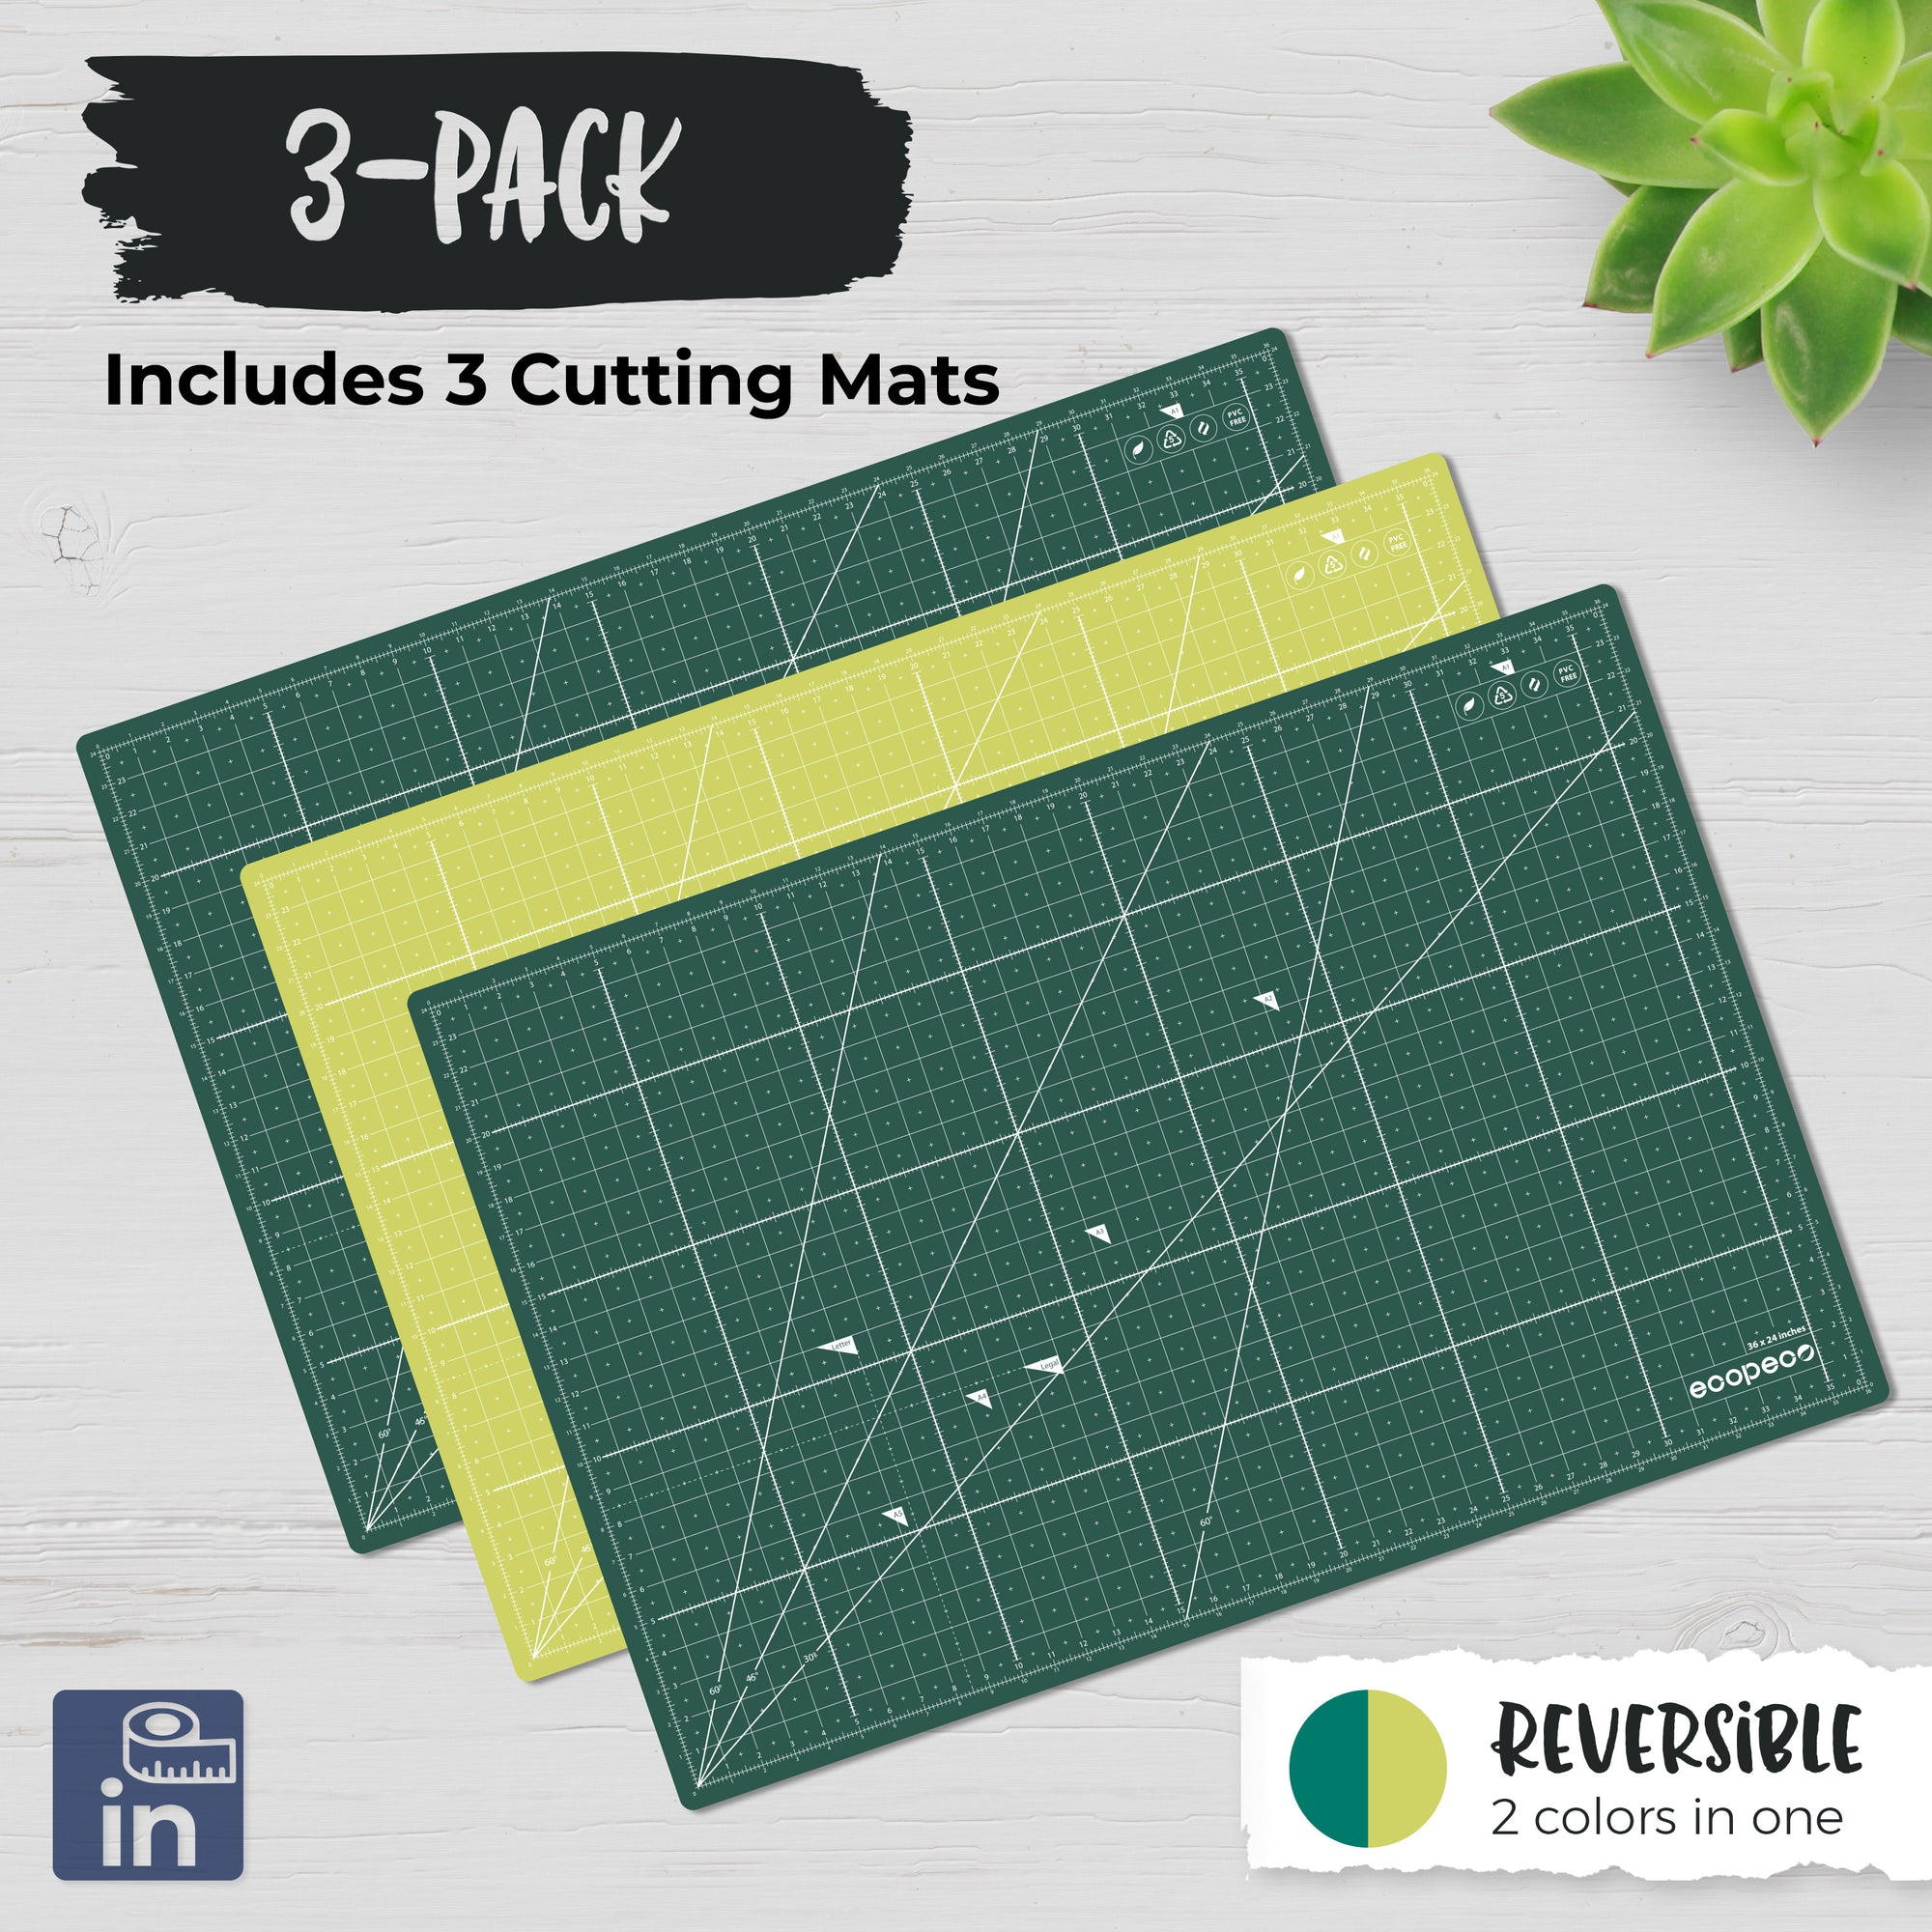 A4 METRIC ecopeco® Self-Healing, Reversible Eco Cutting Mat